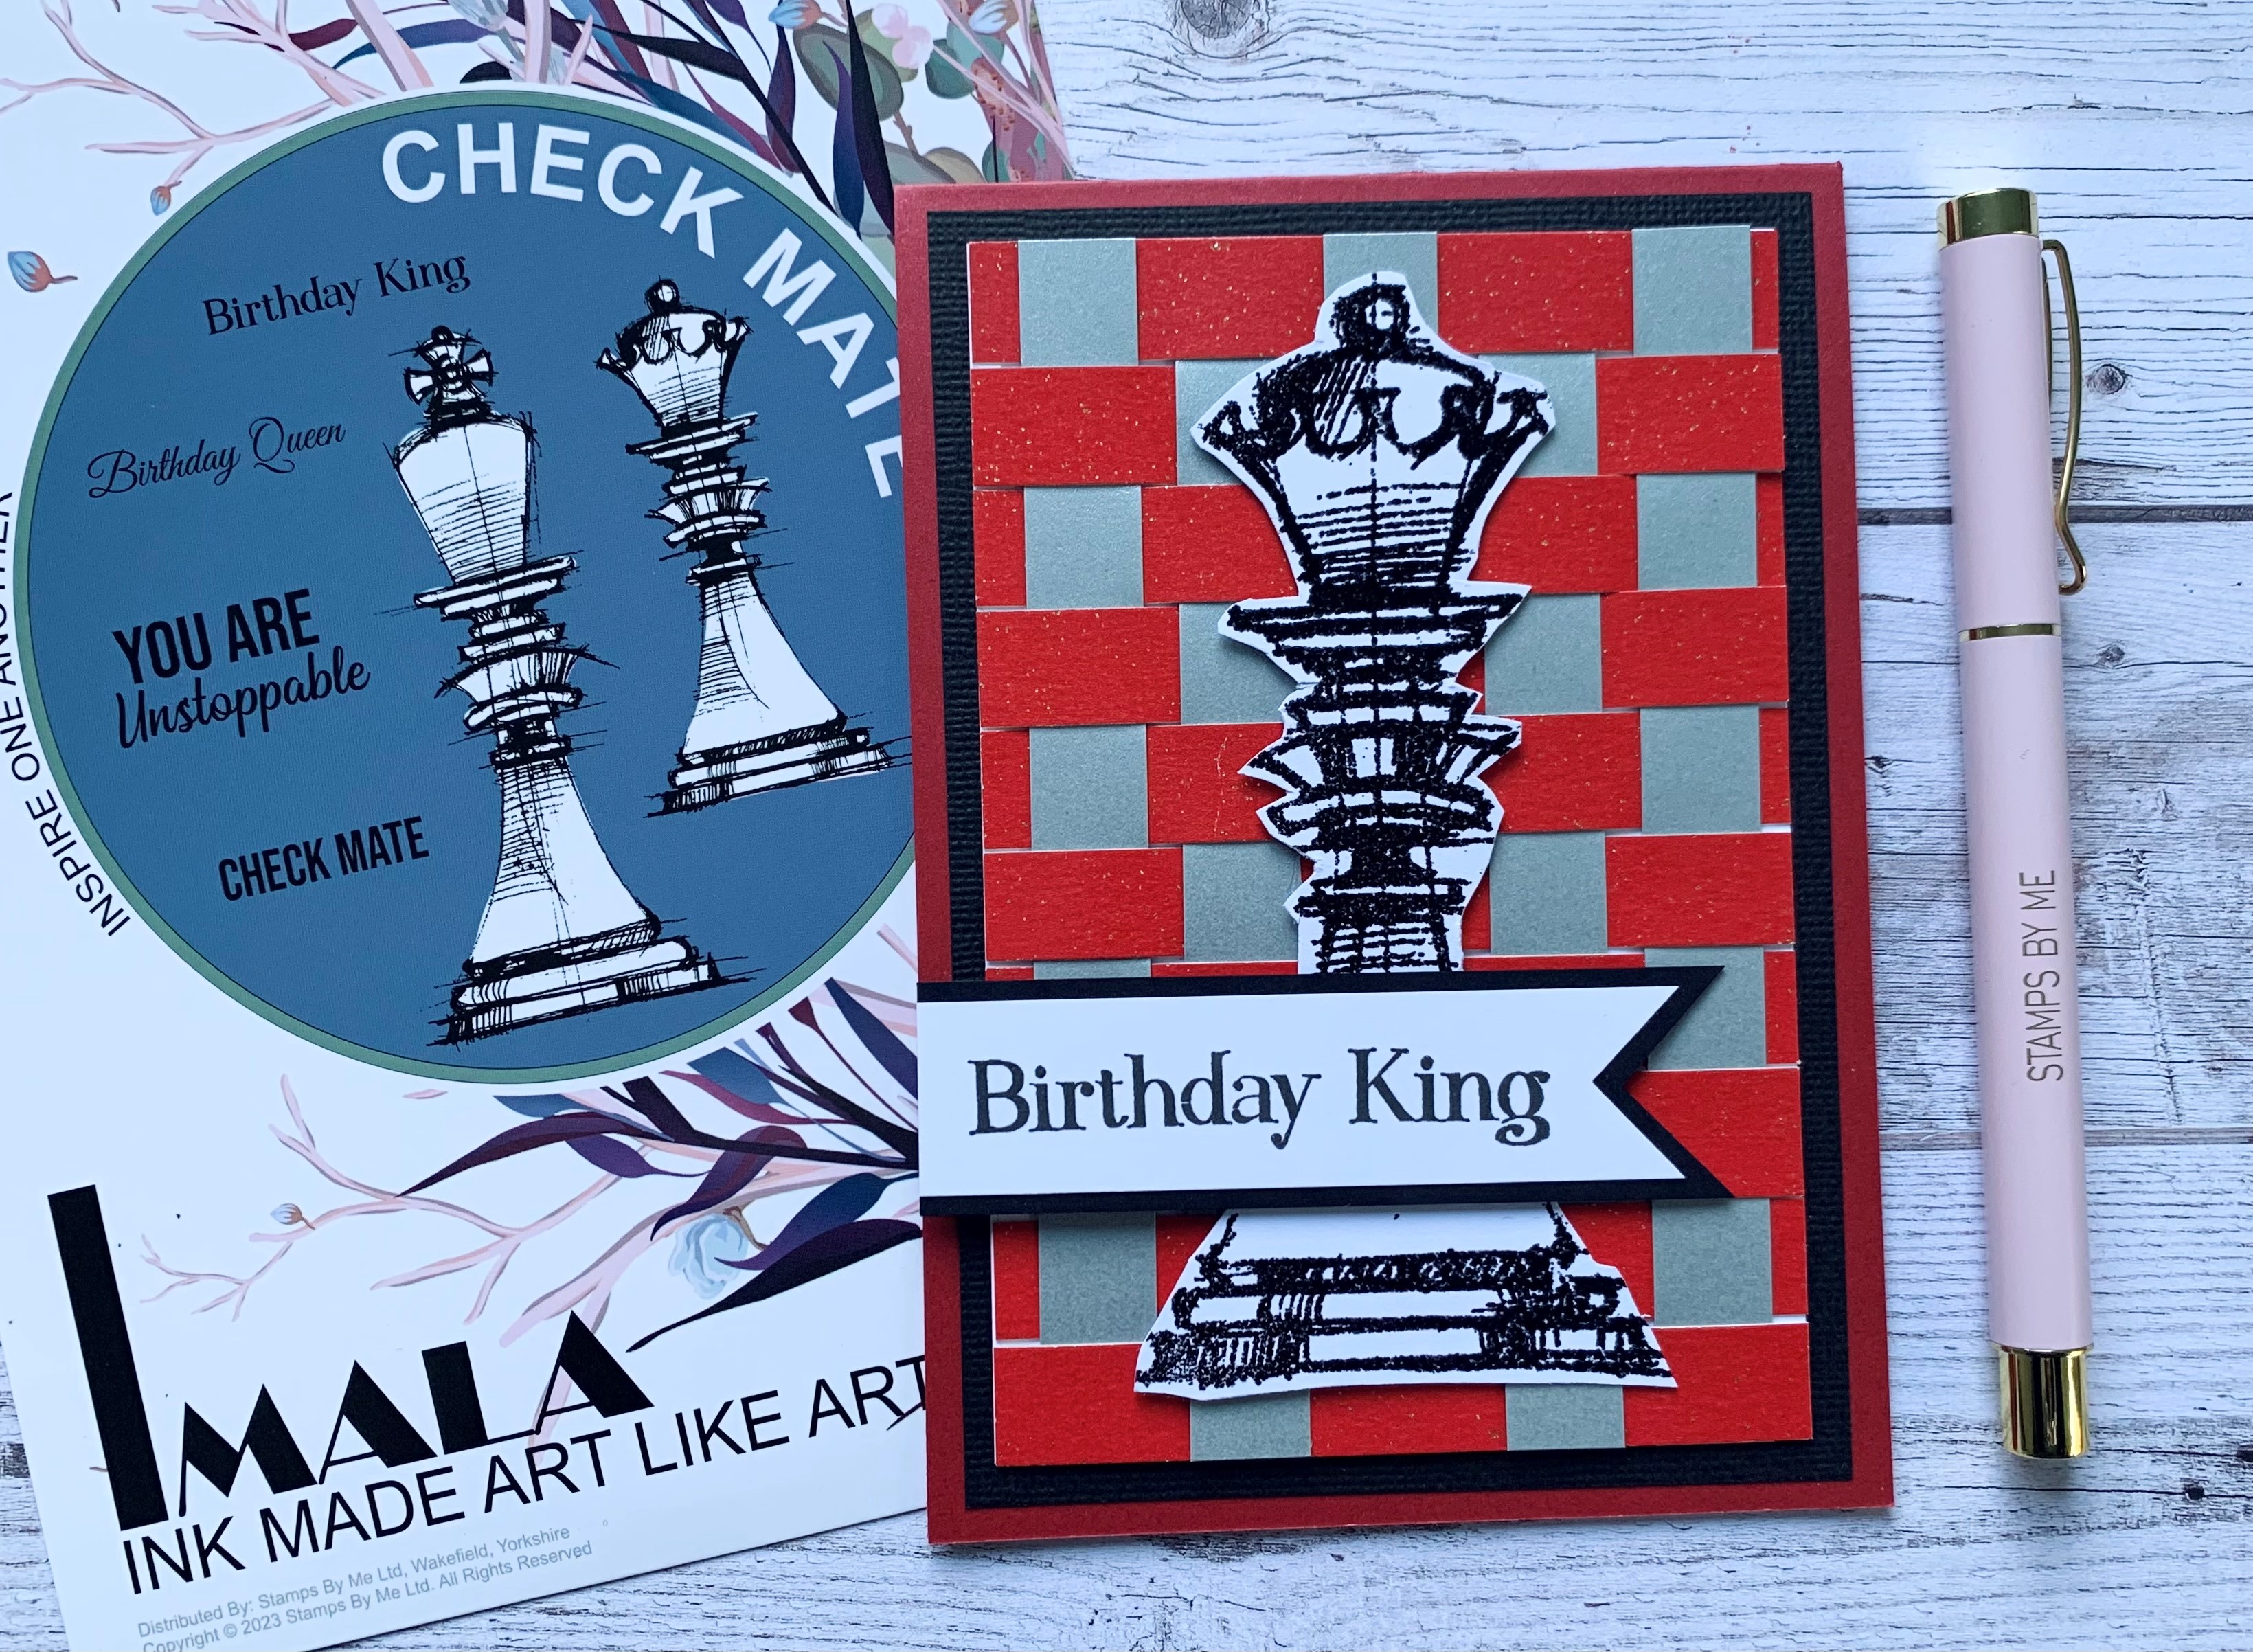 Birthday King (card created by Elaine)